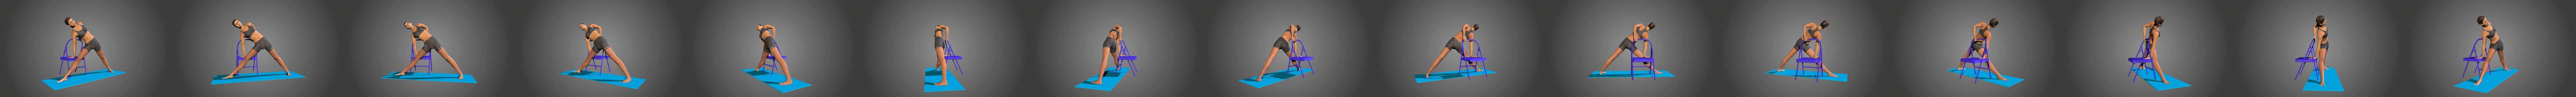 Yoga 3D models  Sketchfab